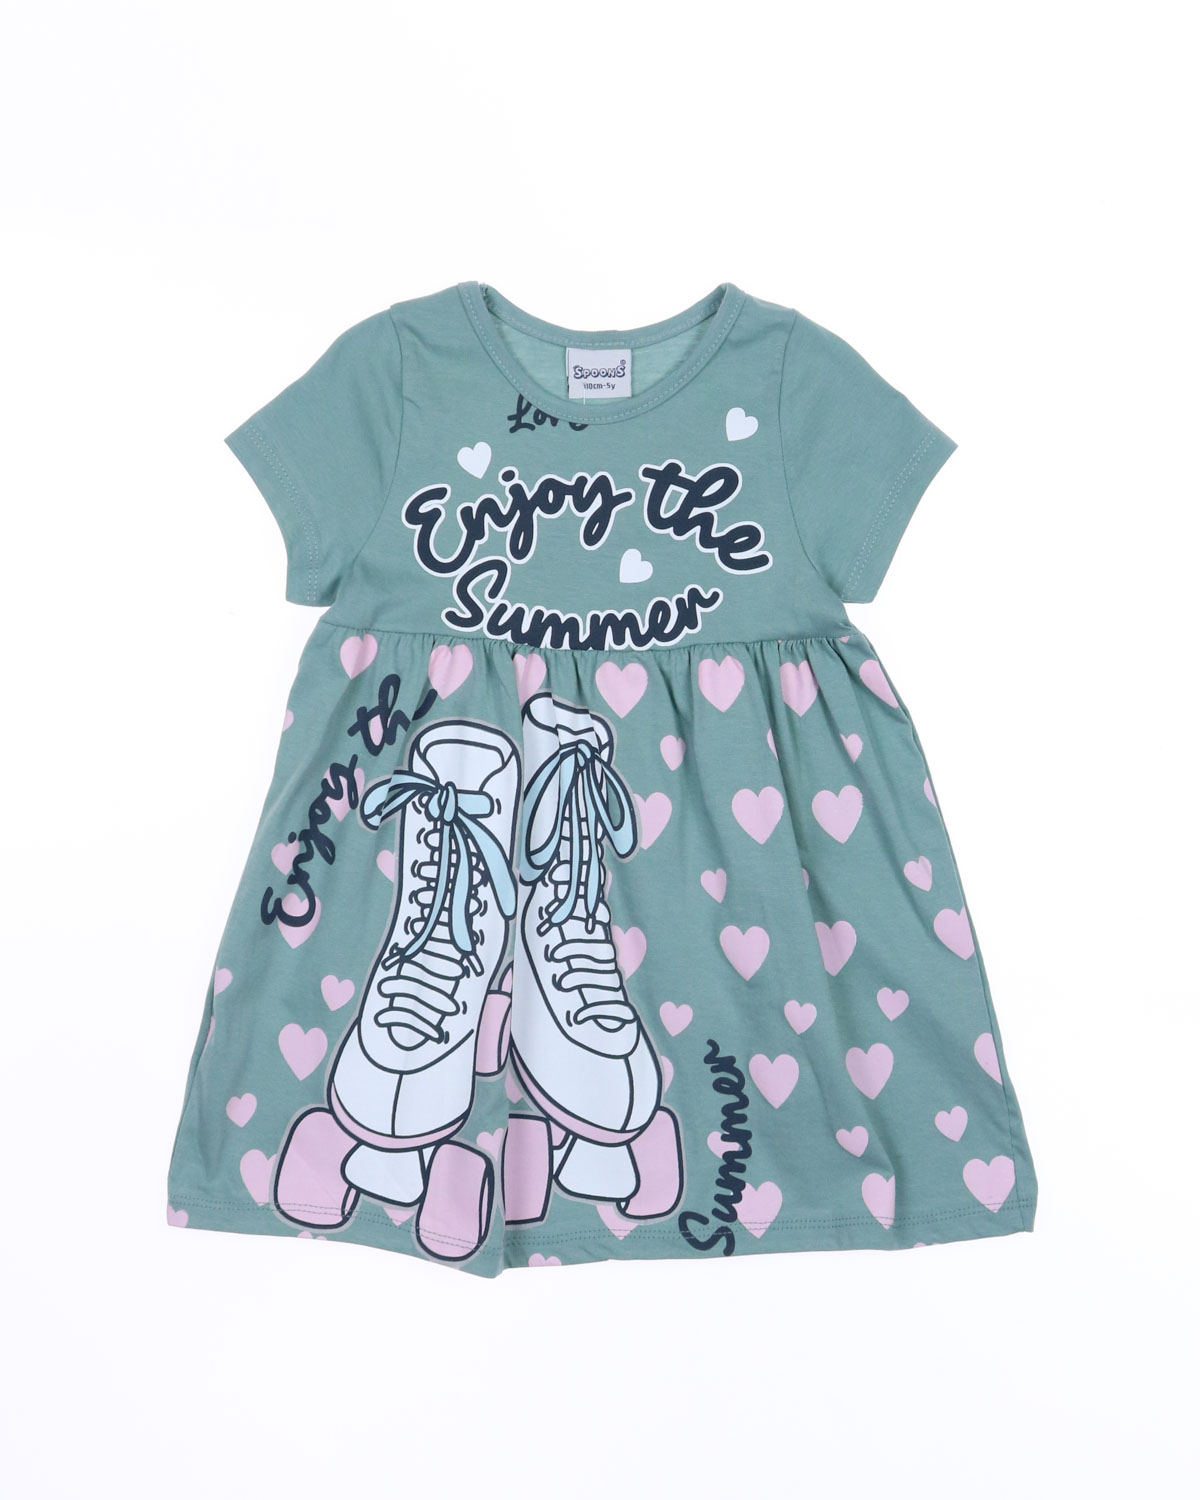 BENNA KIDS (Spoons) 12202 Платье (цвет: Оливковый)